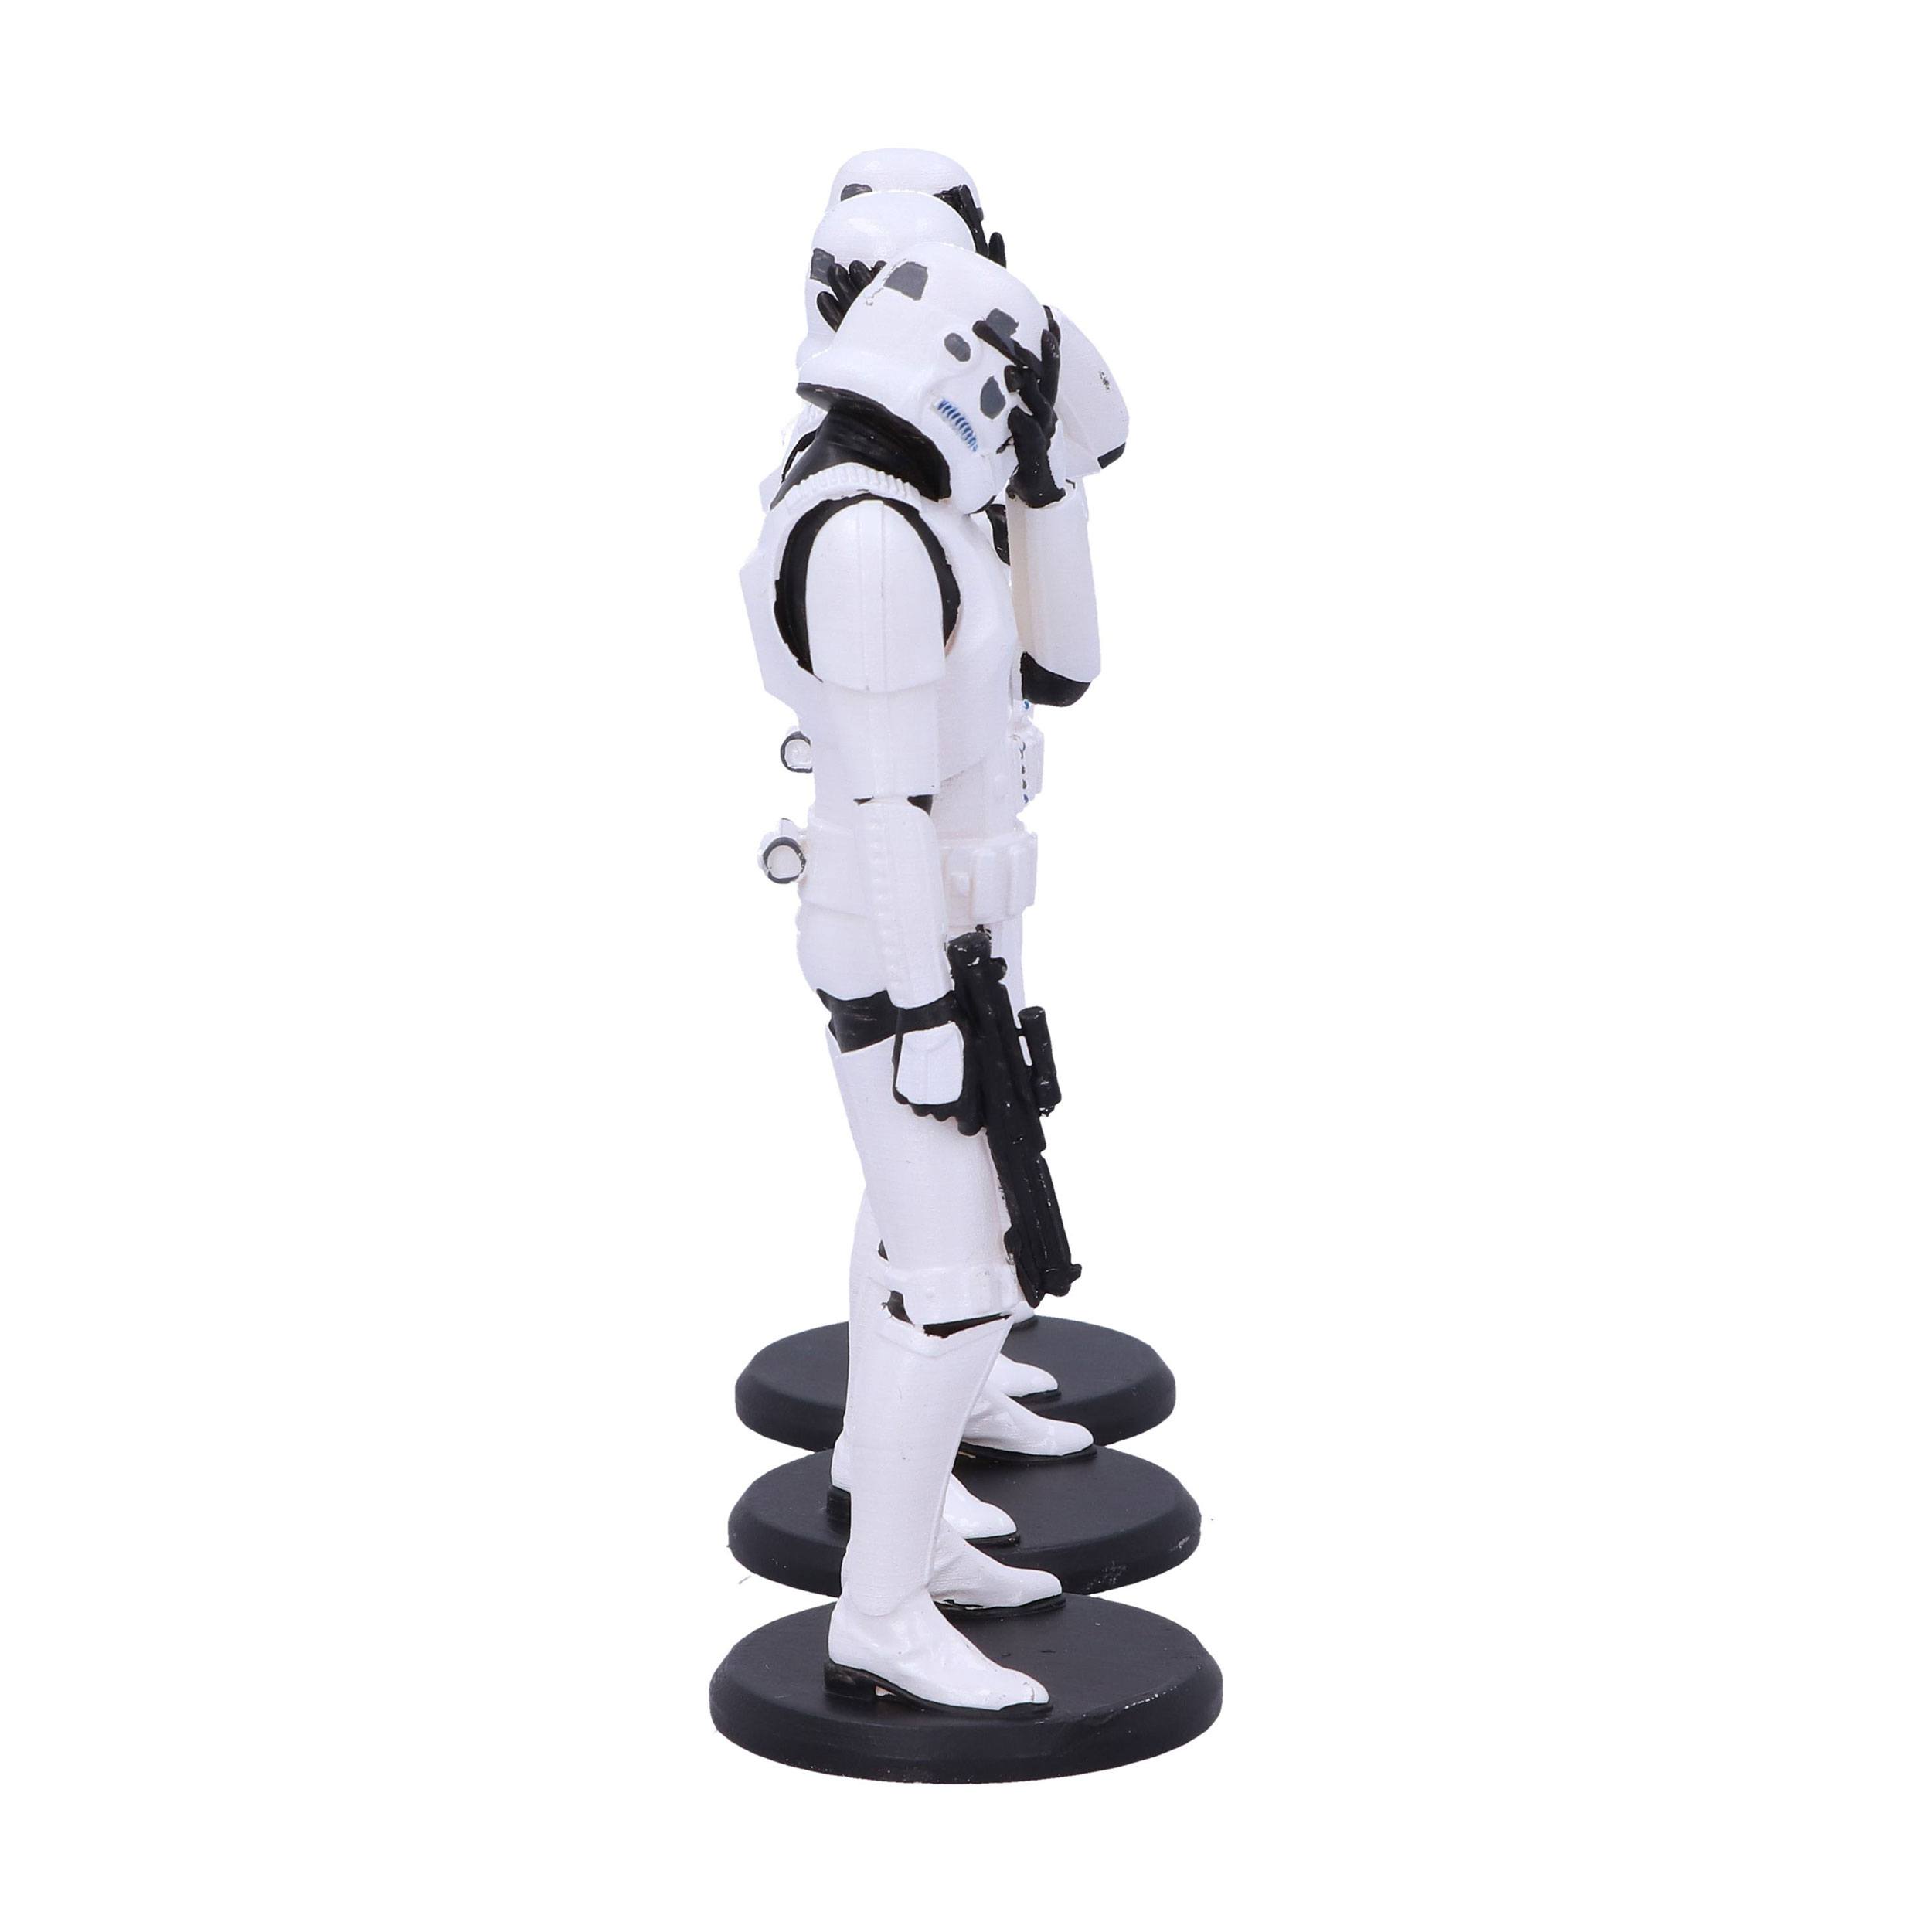 Original Stormtrooper Figuren 3er-Pack Three Wise Stormtroopers 14 cm